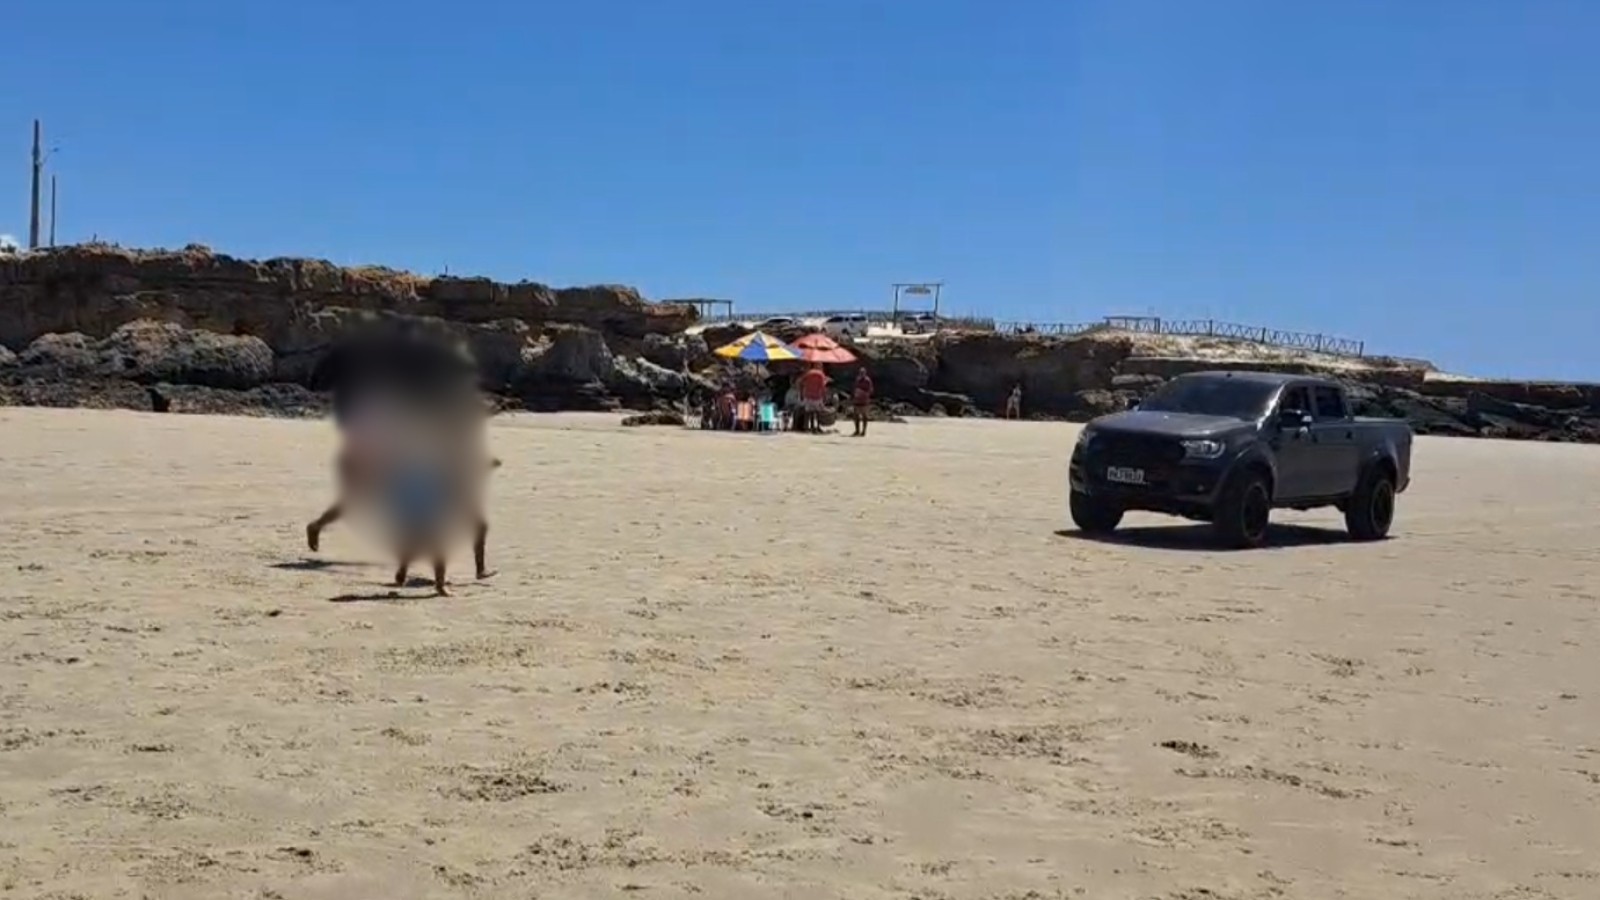 Motoristas põem banhistas em risco ao trafegar em praias no litoral cearense